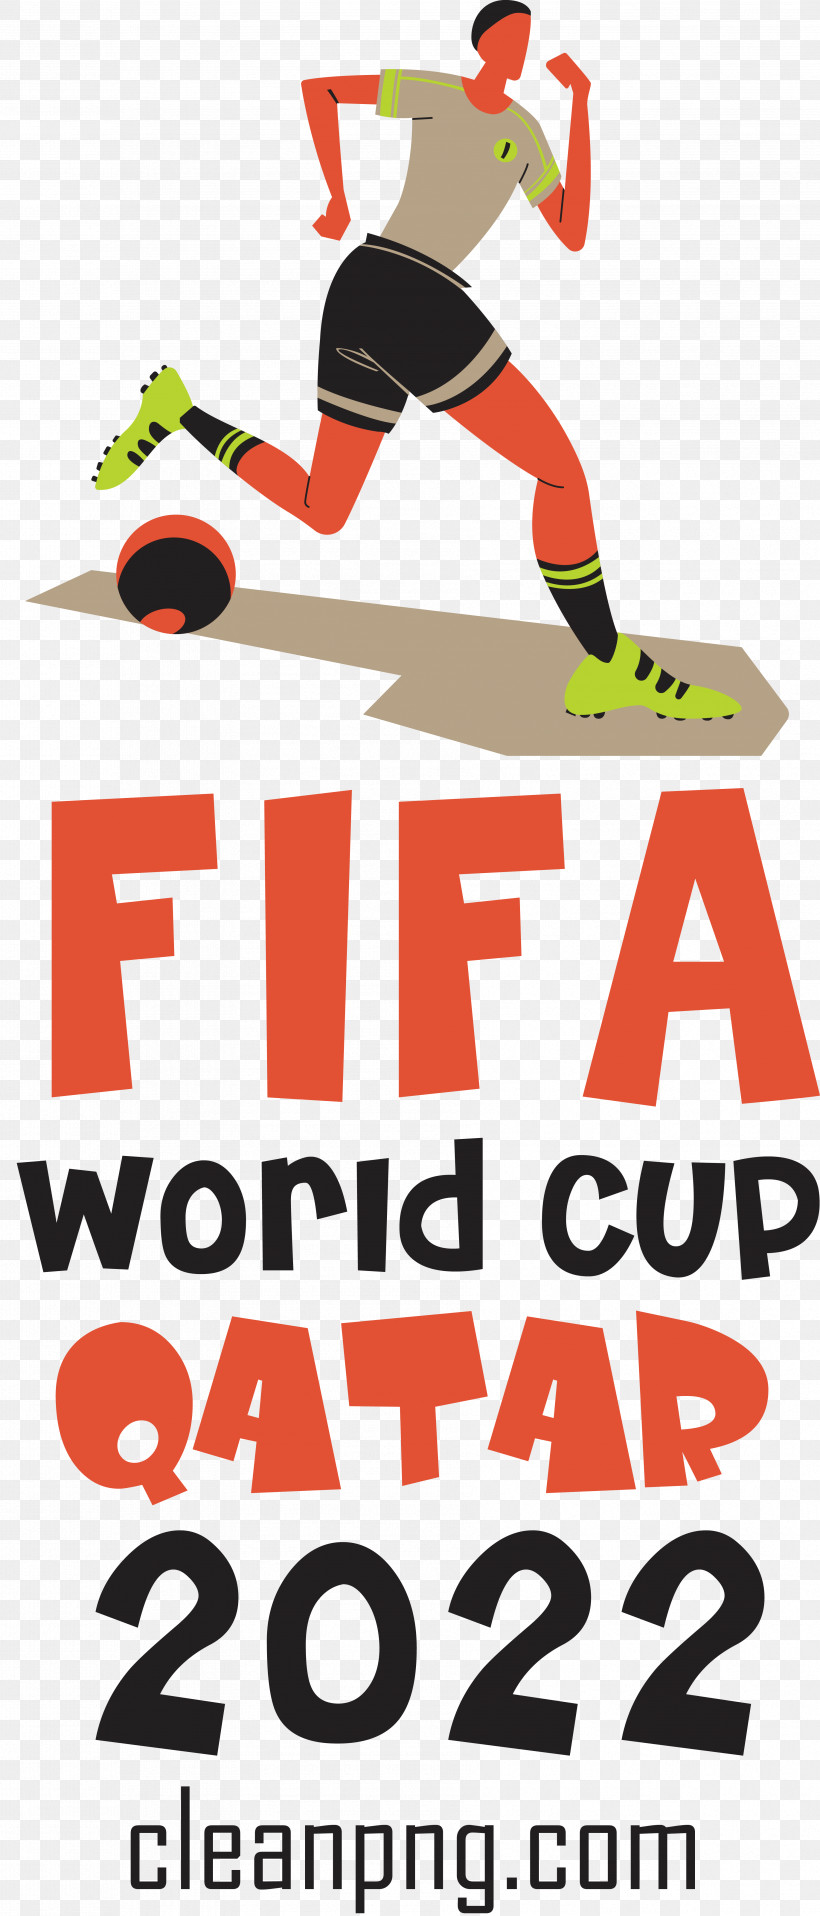 Fifa World Cup Qatar 2022 Fifa World Cup Qatar Football Soccer, PNG, 3562x8327px, Fifa World Cup Qatar 2022, Fifa World Cup, Football, Qatar, Soccer Download Free